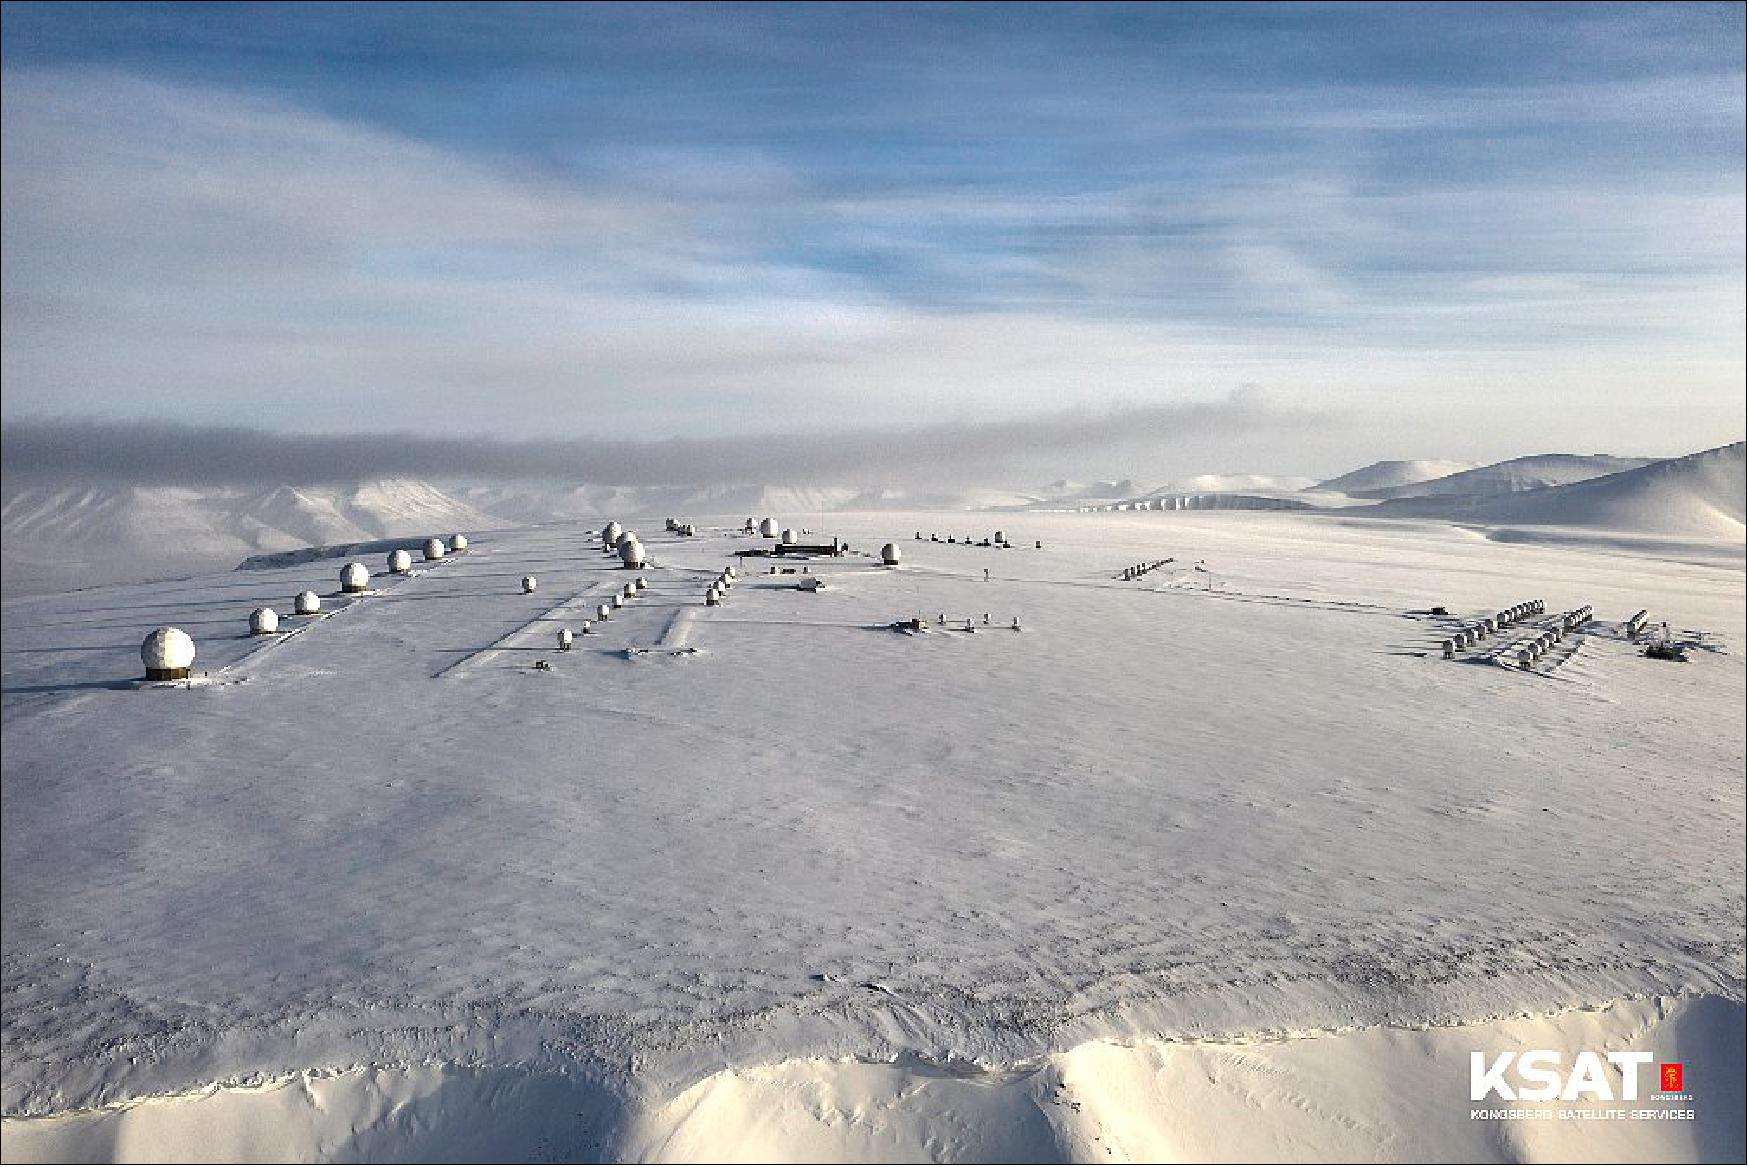 Figure 15: KSAT's Svalbard ground station (image credit: KSAT)